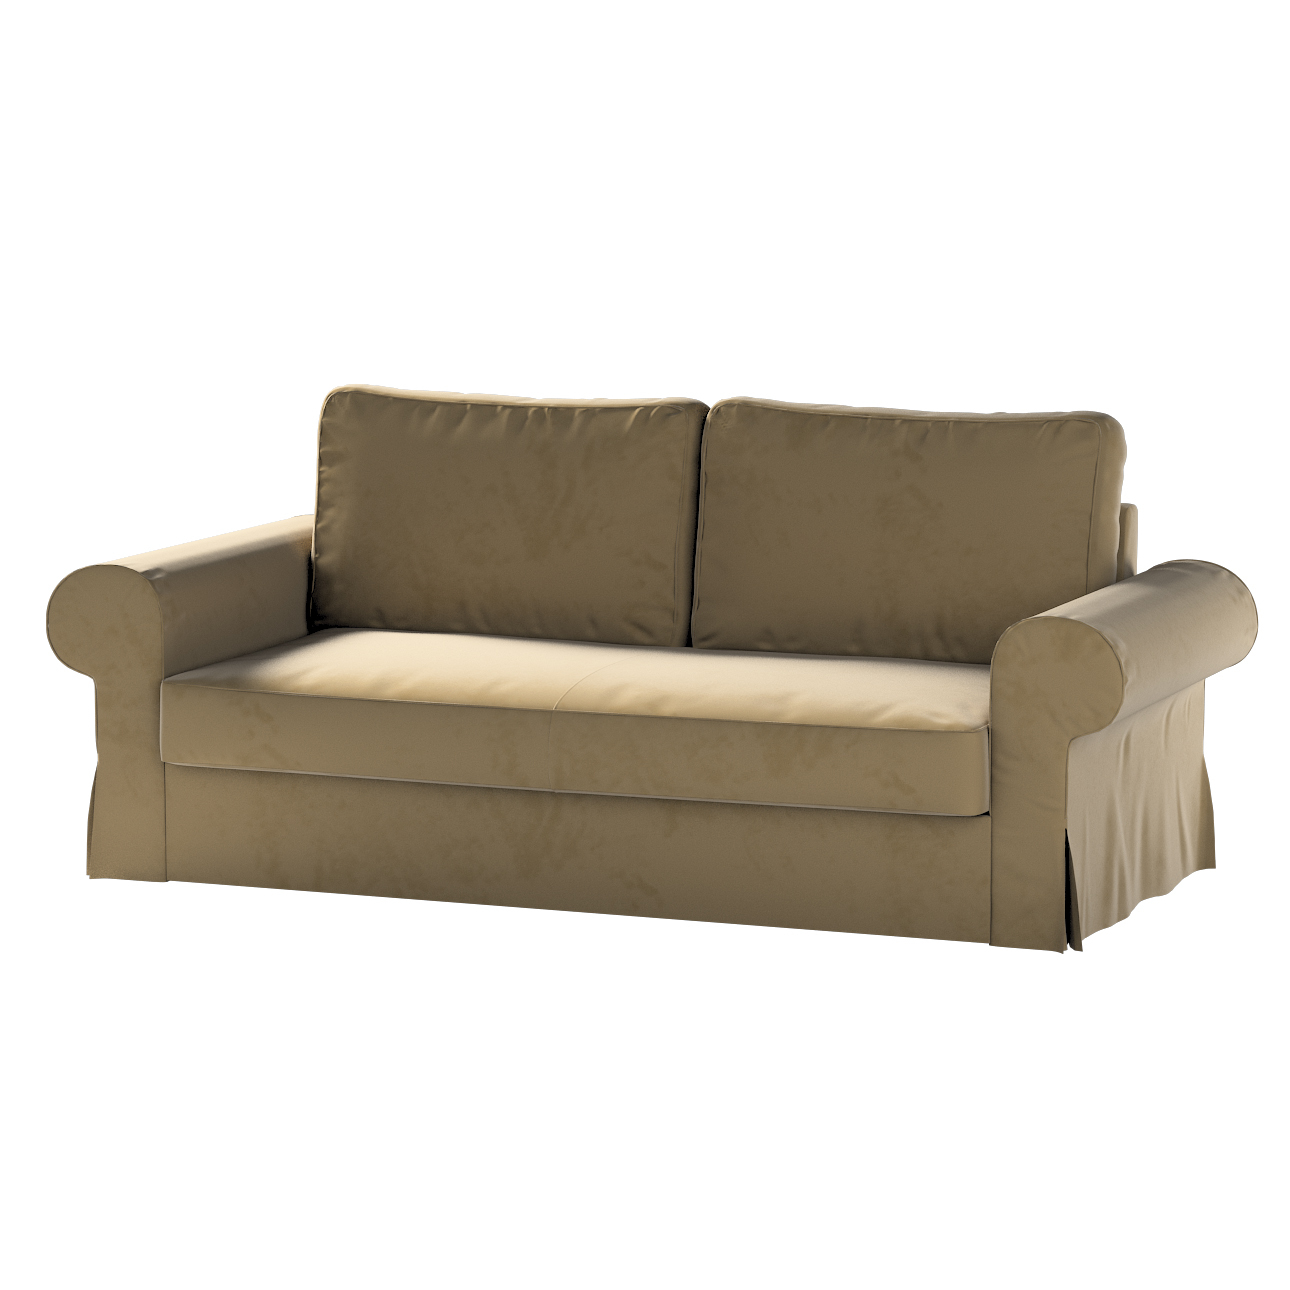 Bezug für Backabro 3-Sitzer Sofa ausklappbar, hellbraun, Bezug für Backabro günstig online kaufen